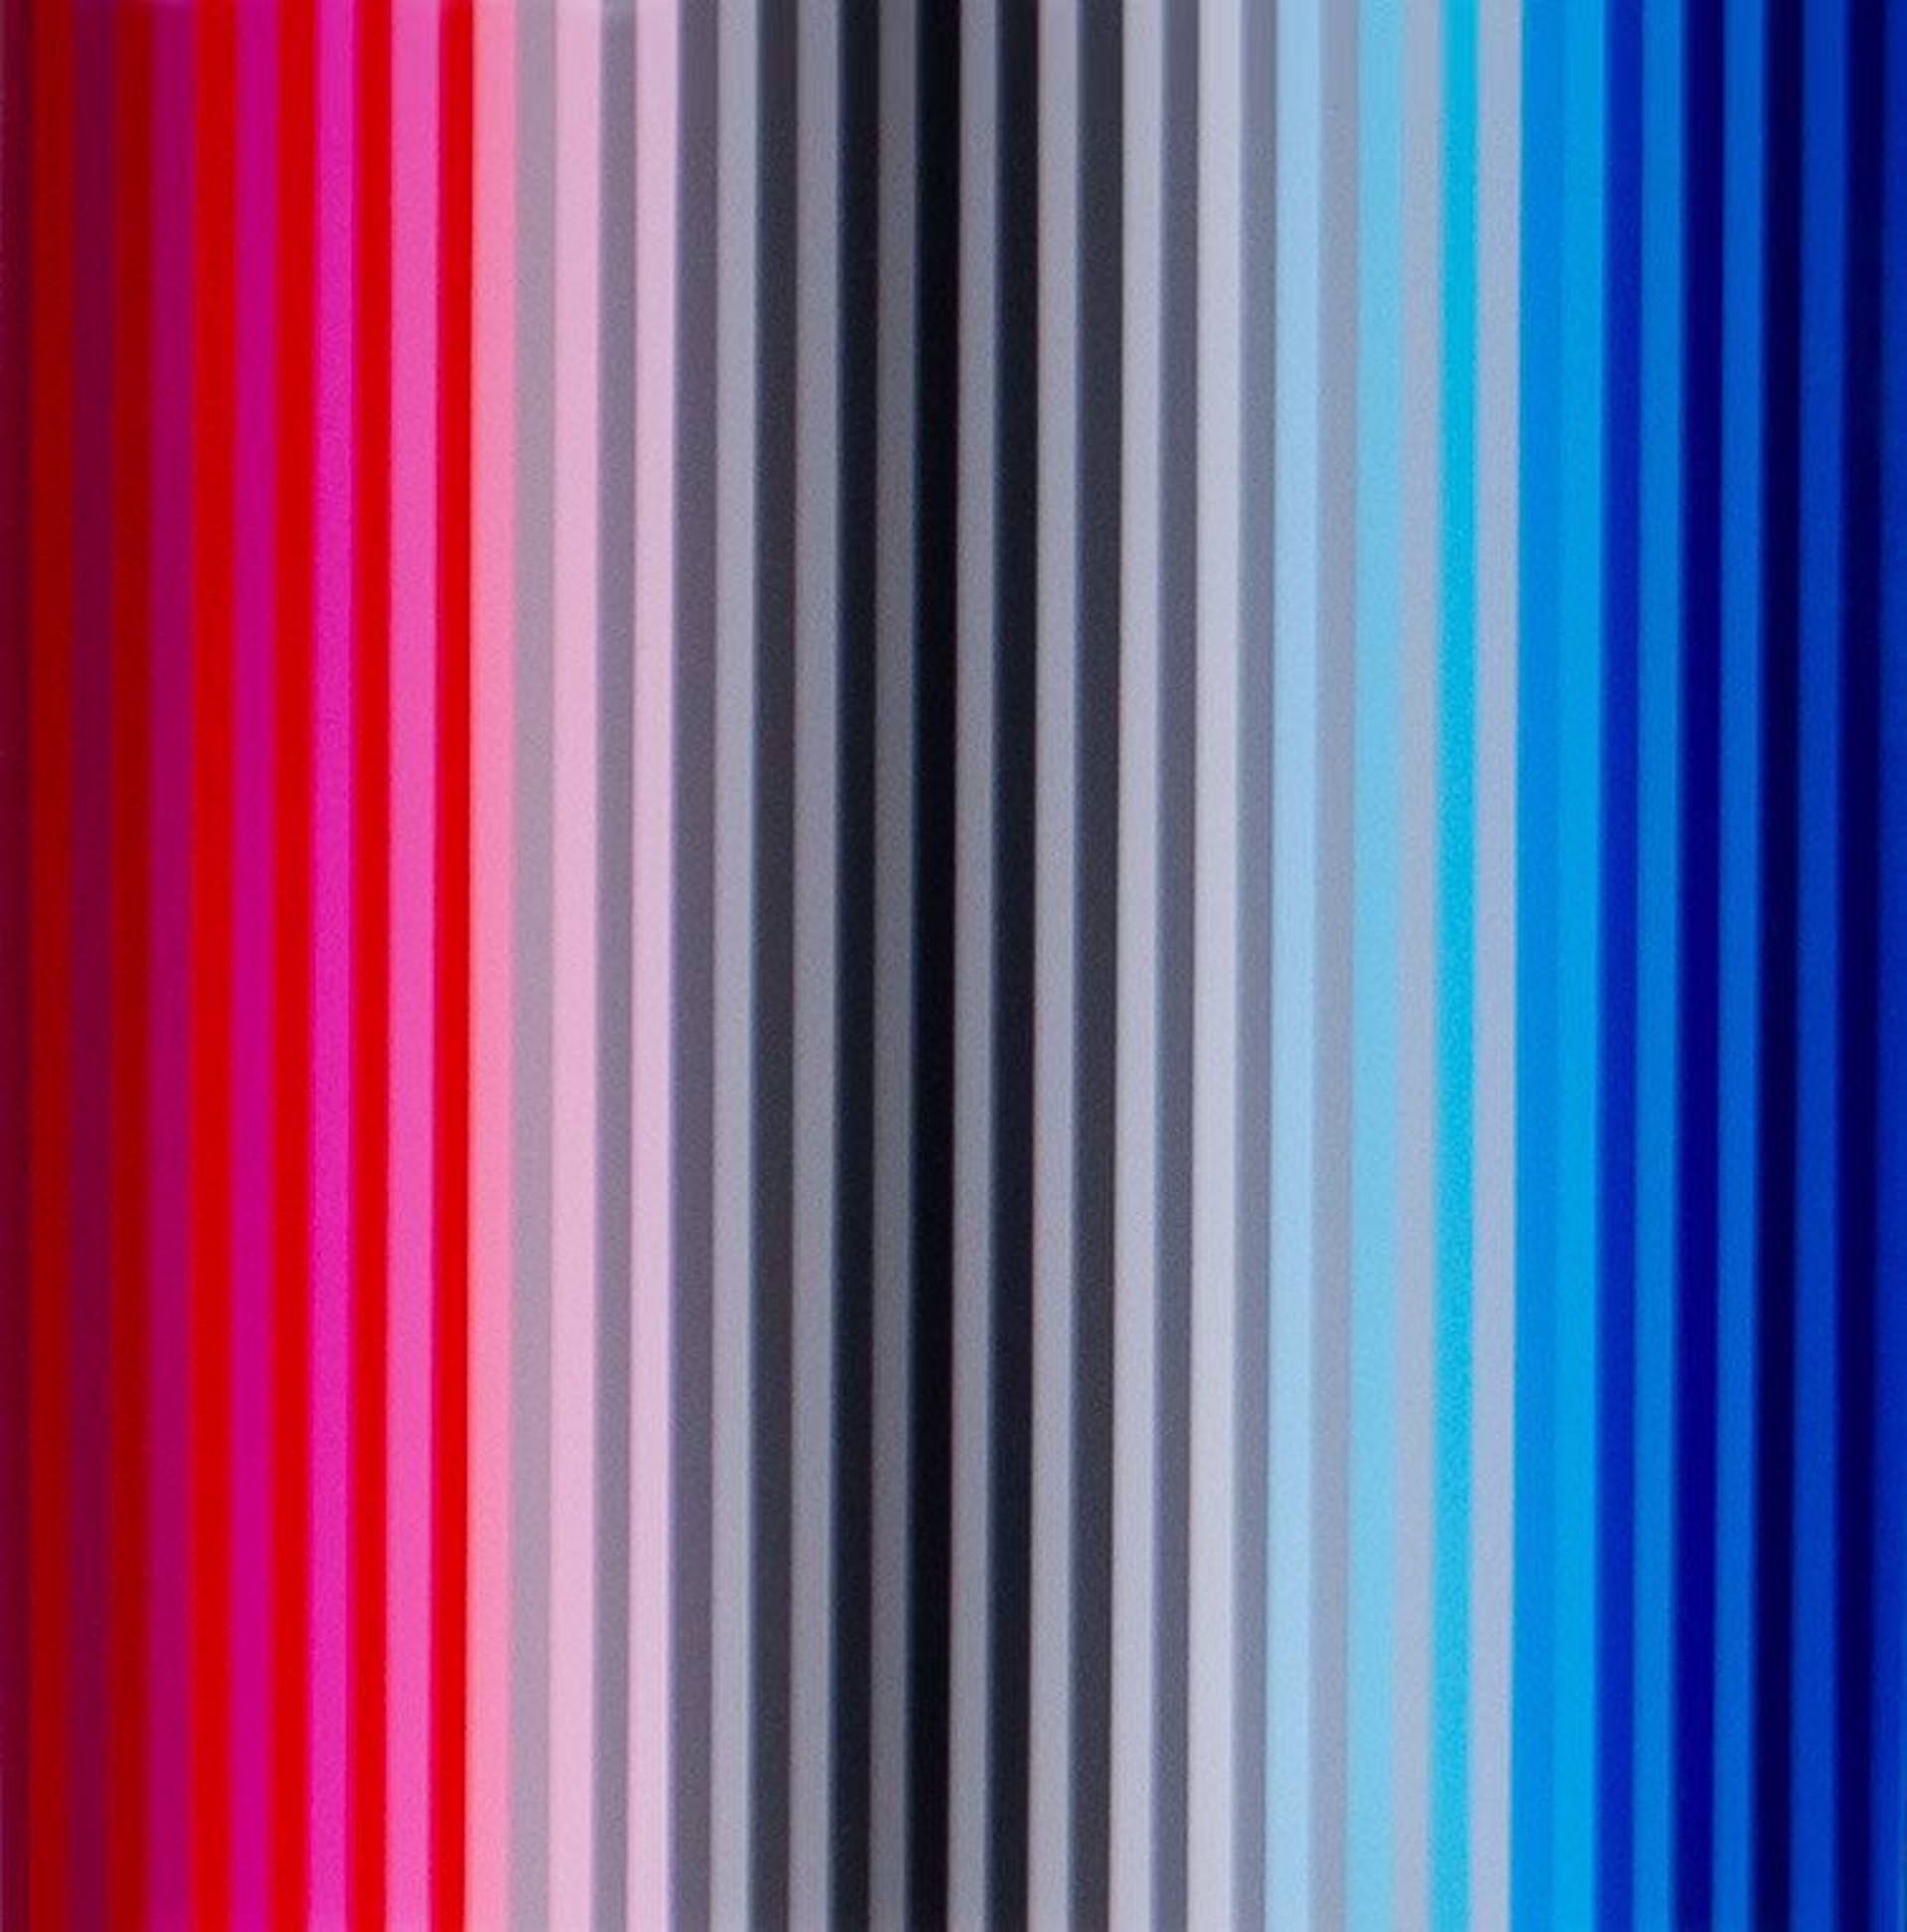 Red to Blue Spectrum by Jarrad Tacon-Heaslip